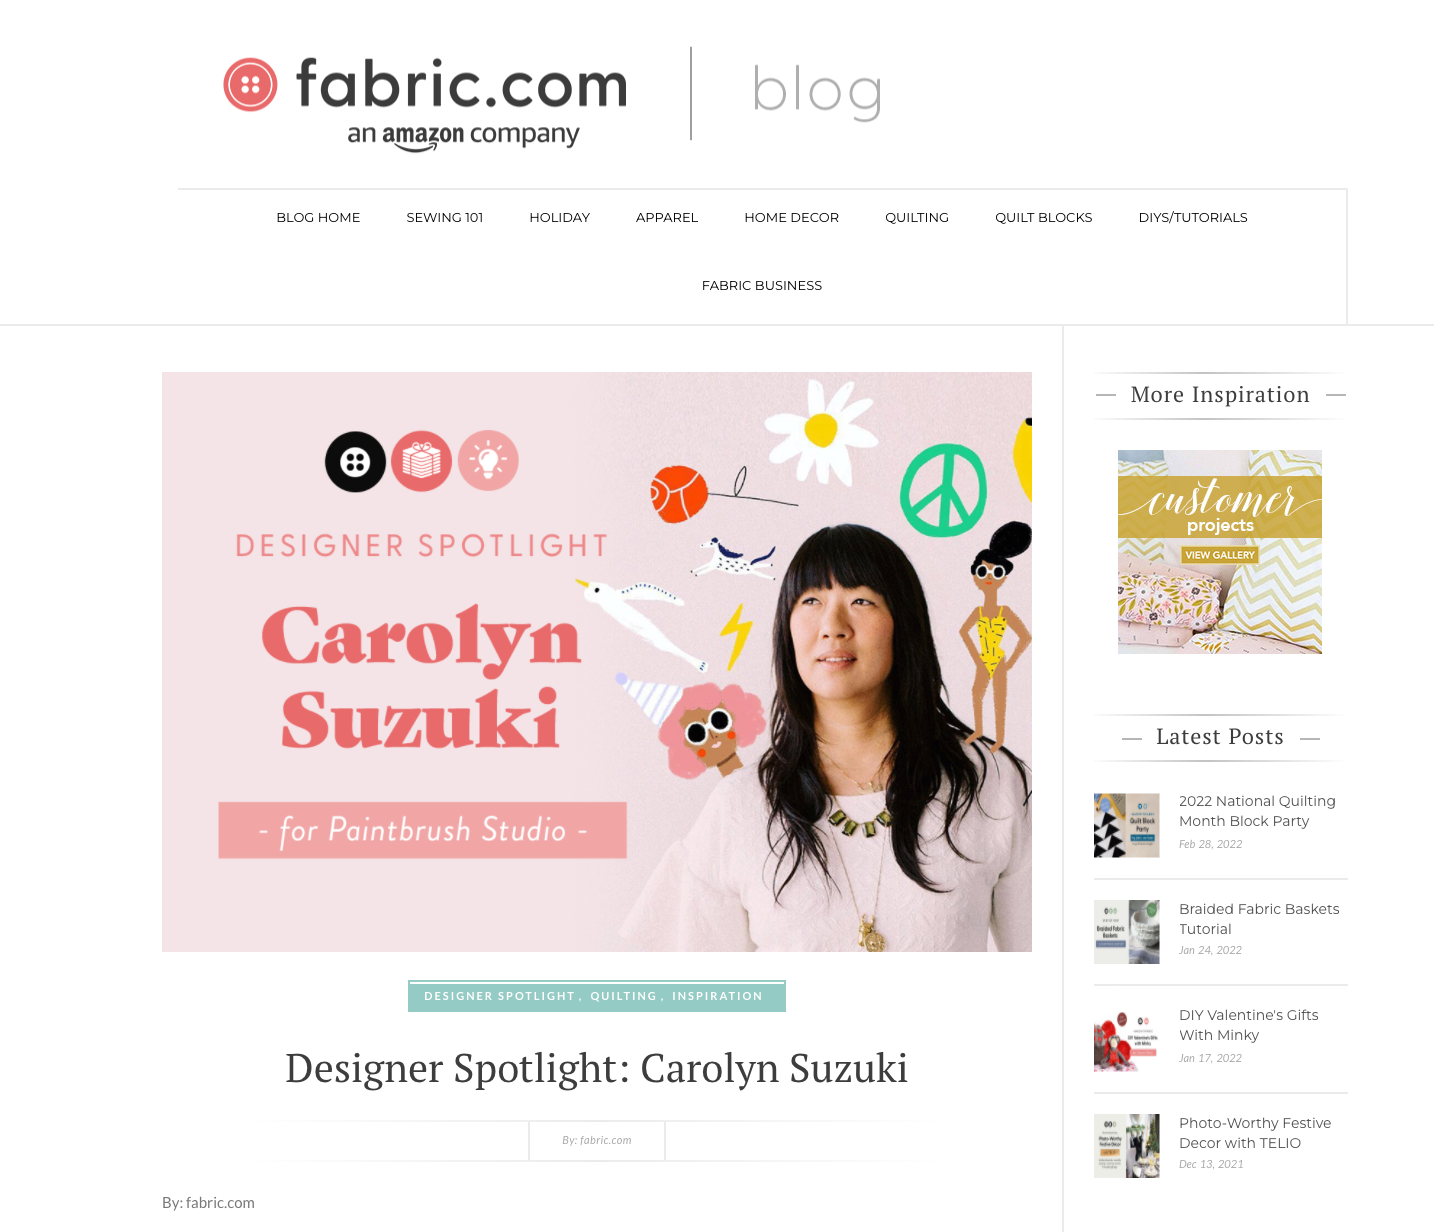 Fabric.com - December 2020 